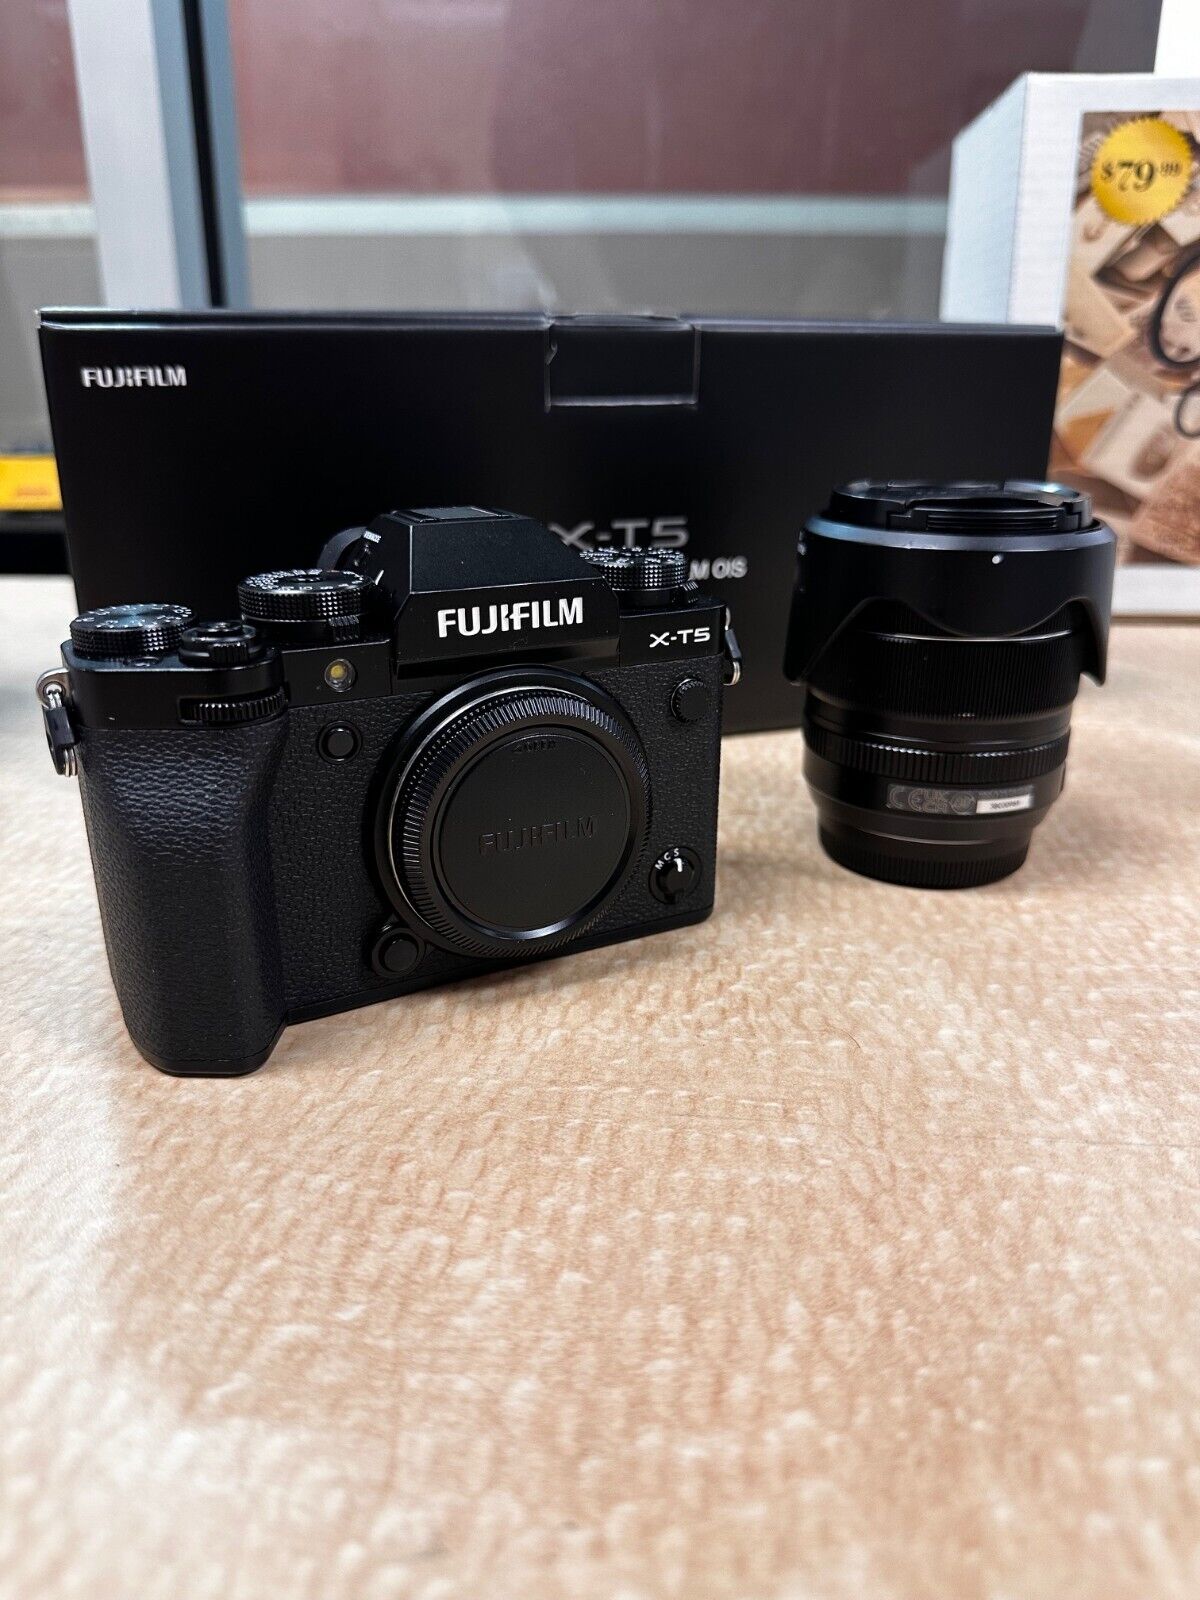 FUJIFILM X-T5 Mirrorless Camera - Black w/ Fuji XF 18-55mm f/2.8-4 R LM OIS Lens